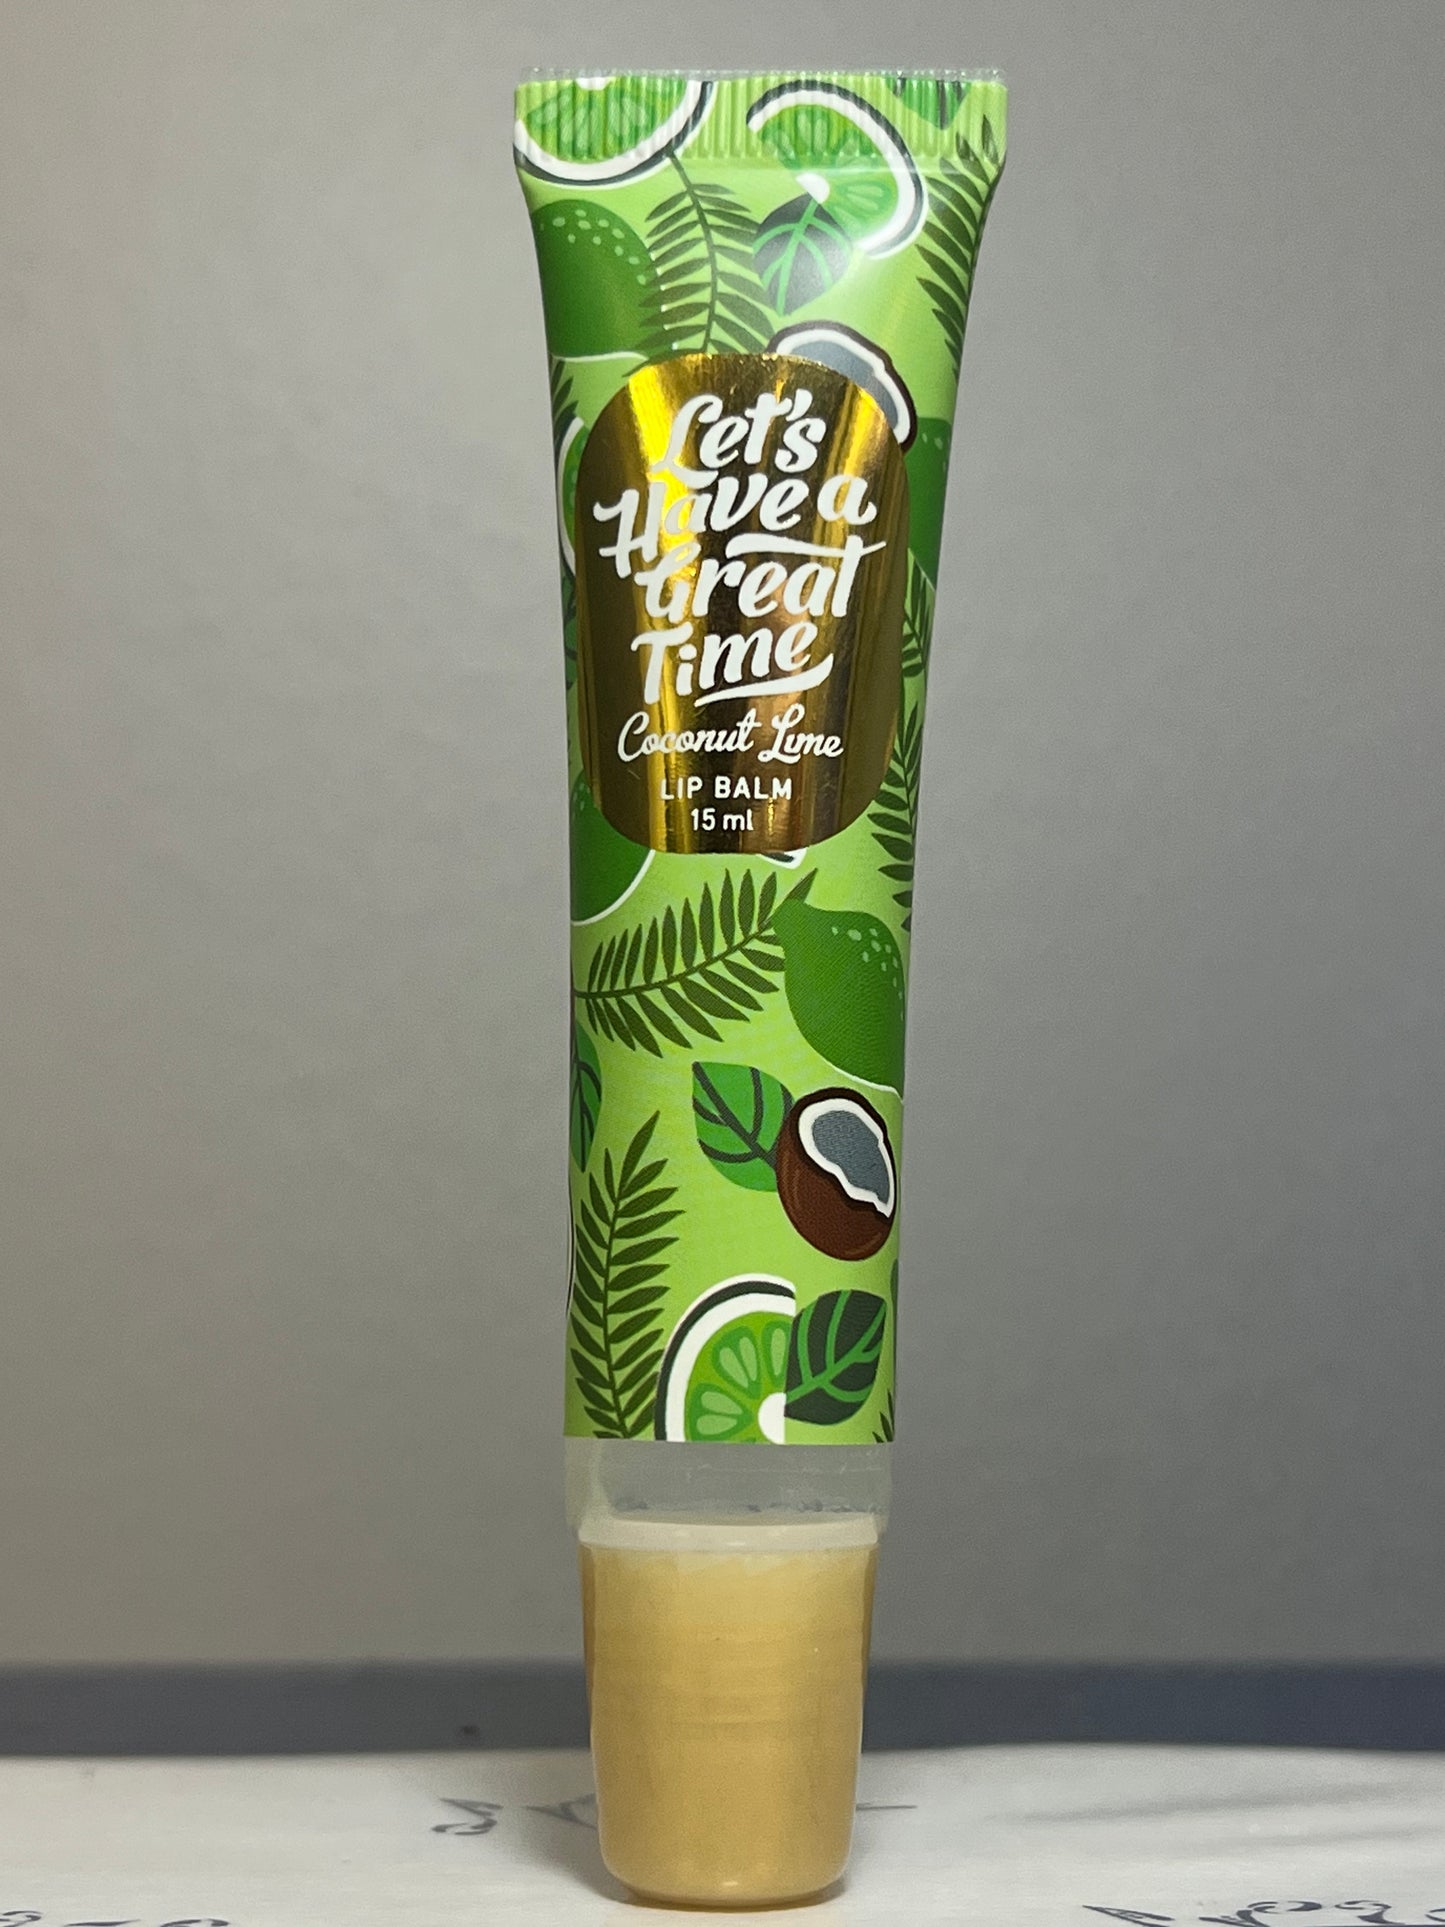 Coffret Cadeau Noix de Coco Citron Vert: Baume à Lèvres et Crème pour les Mains et les Ongles